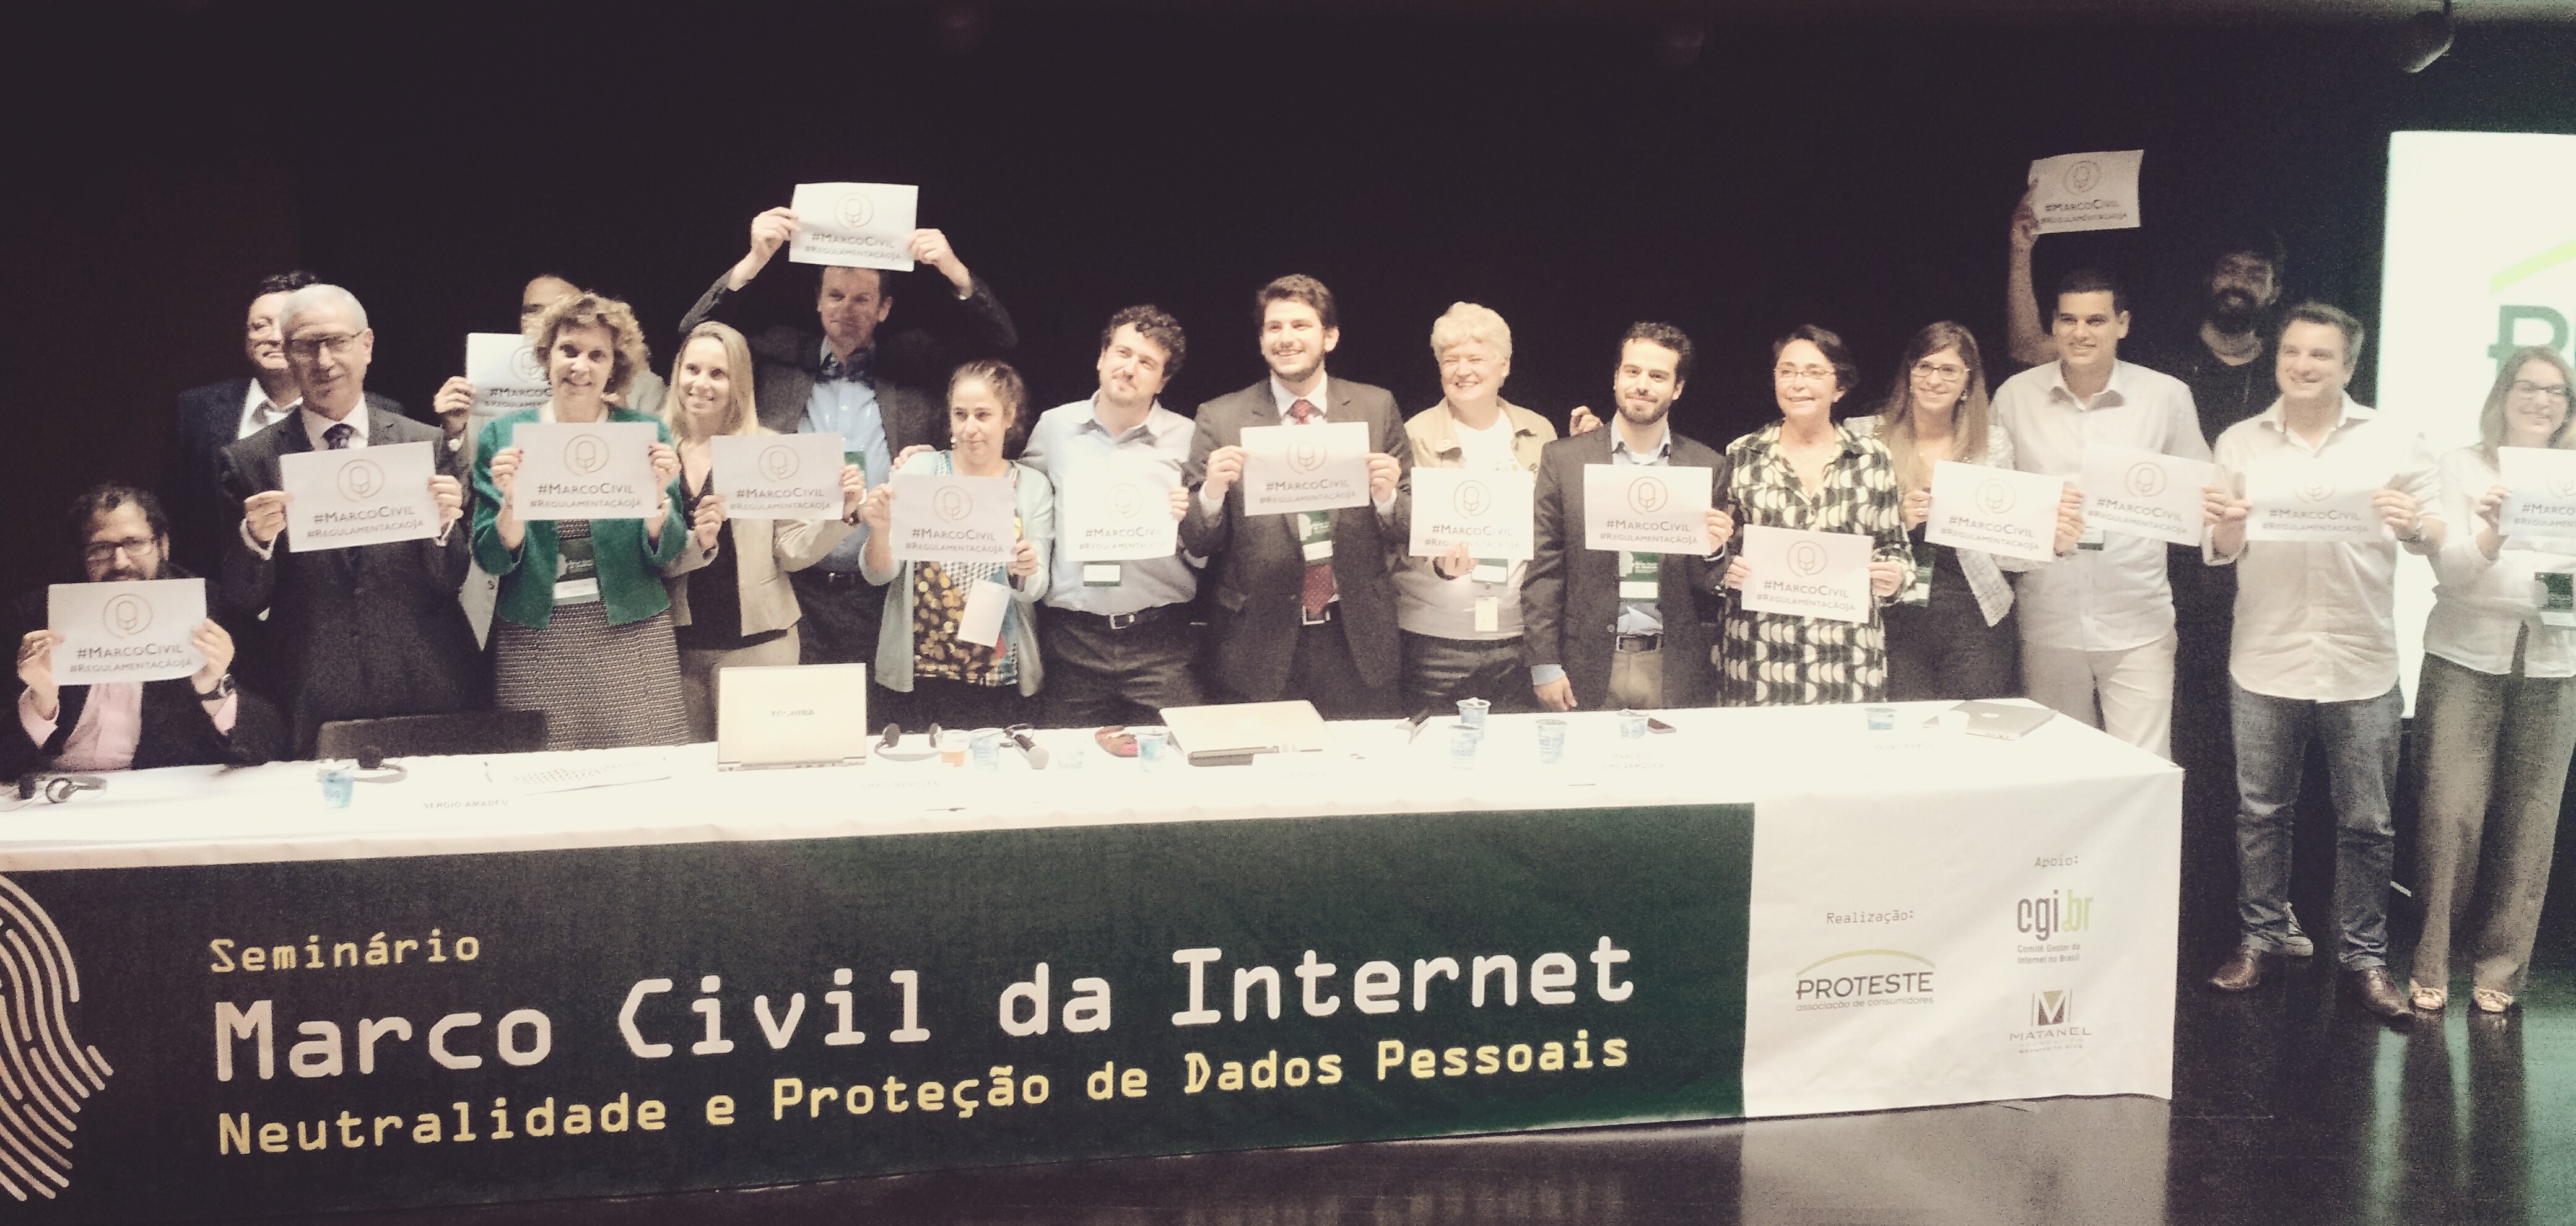 Foto de 18 pessoas em pé, segurando um papel, atrás de uma bancada em que está escrito: "Seminário: Marco Civil da Internet Neutralidade e Proteção de Dados pessoais". 